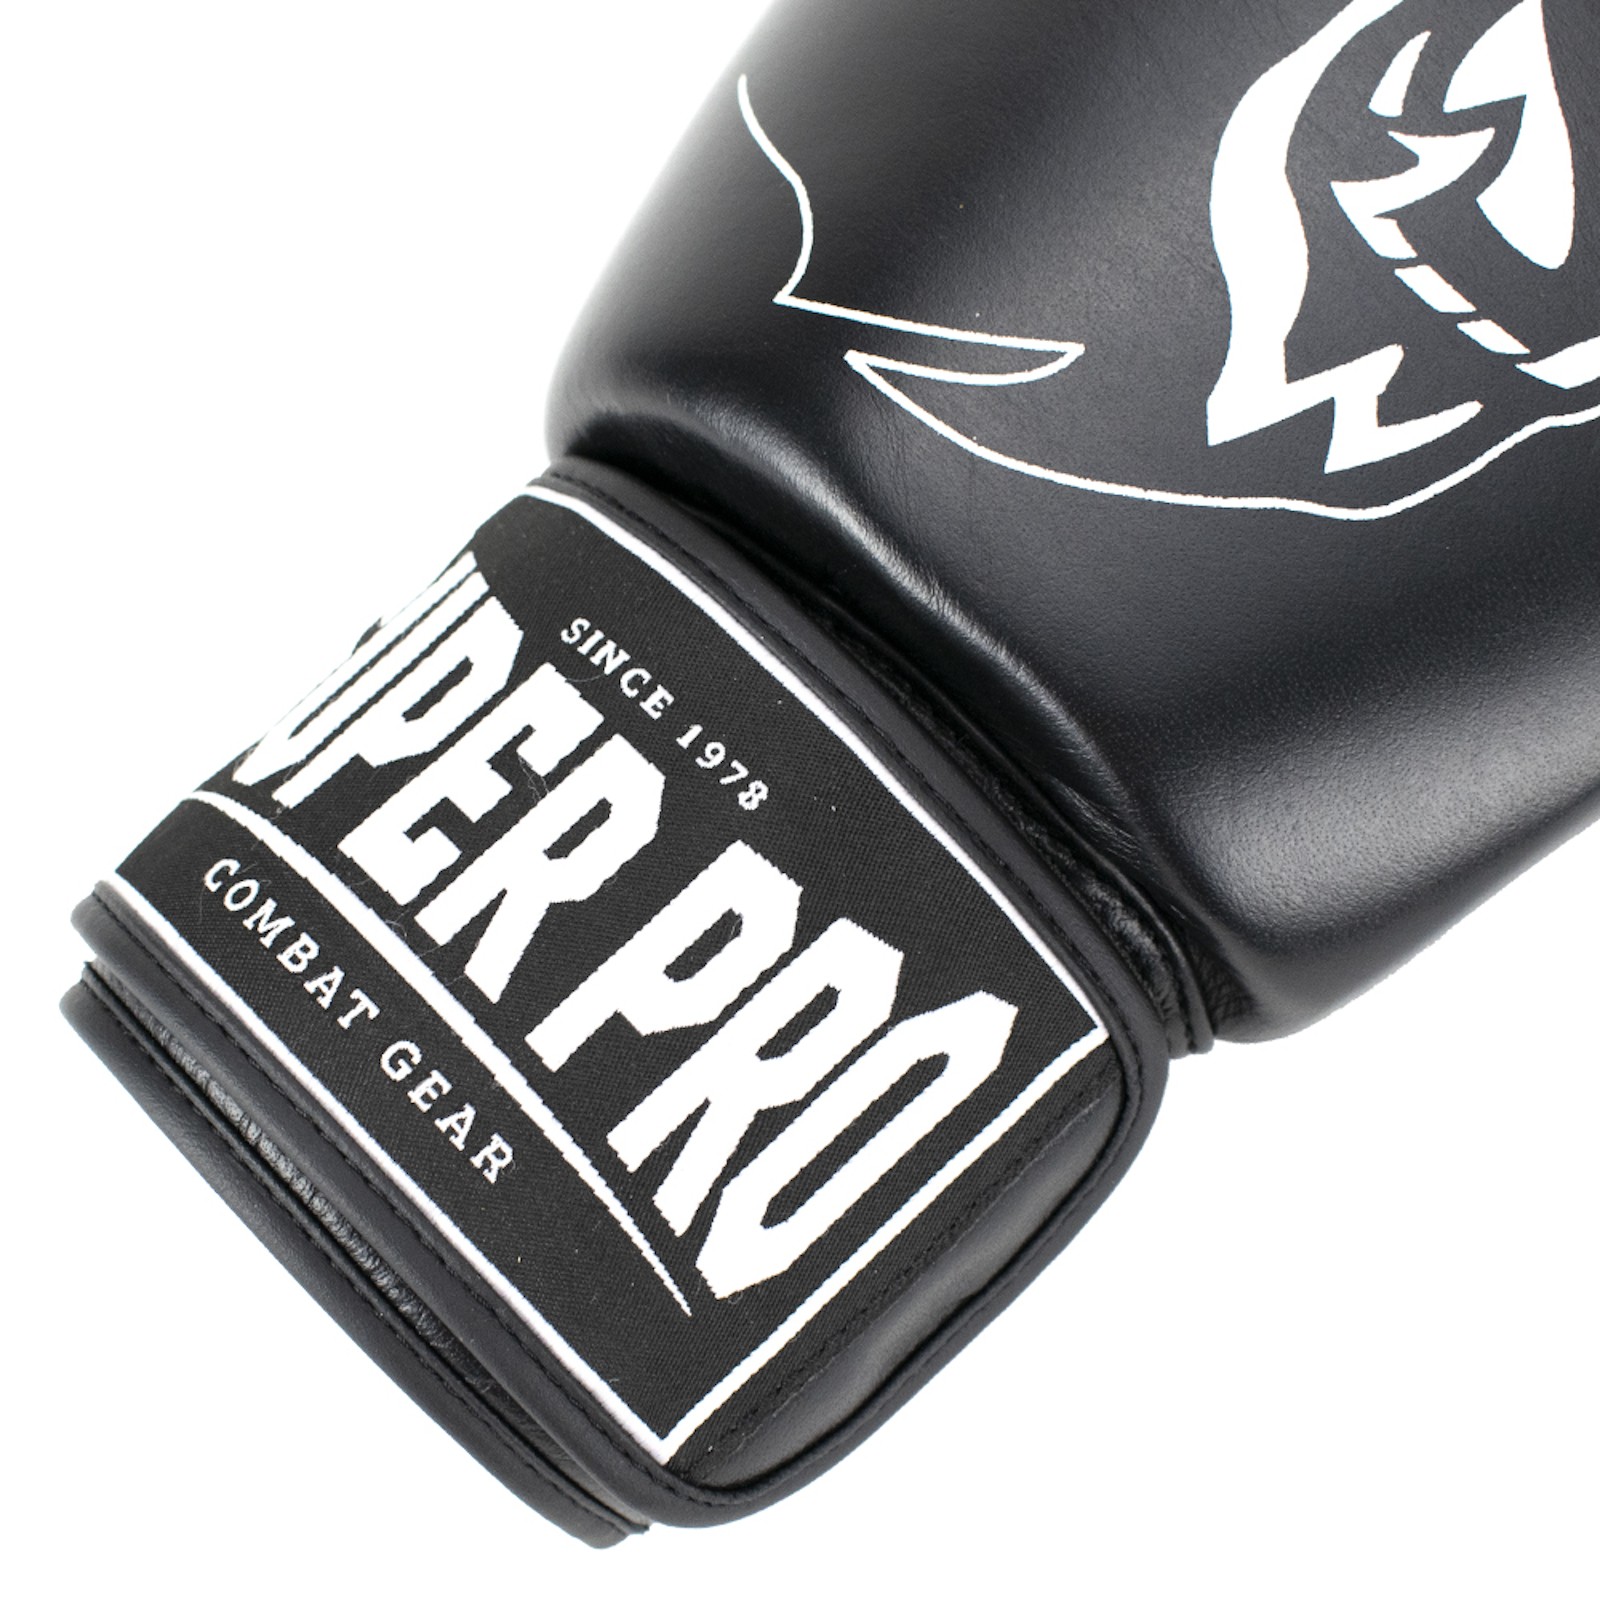 Pro Sport-Tiedje Warrior Super Boxhandschuh -